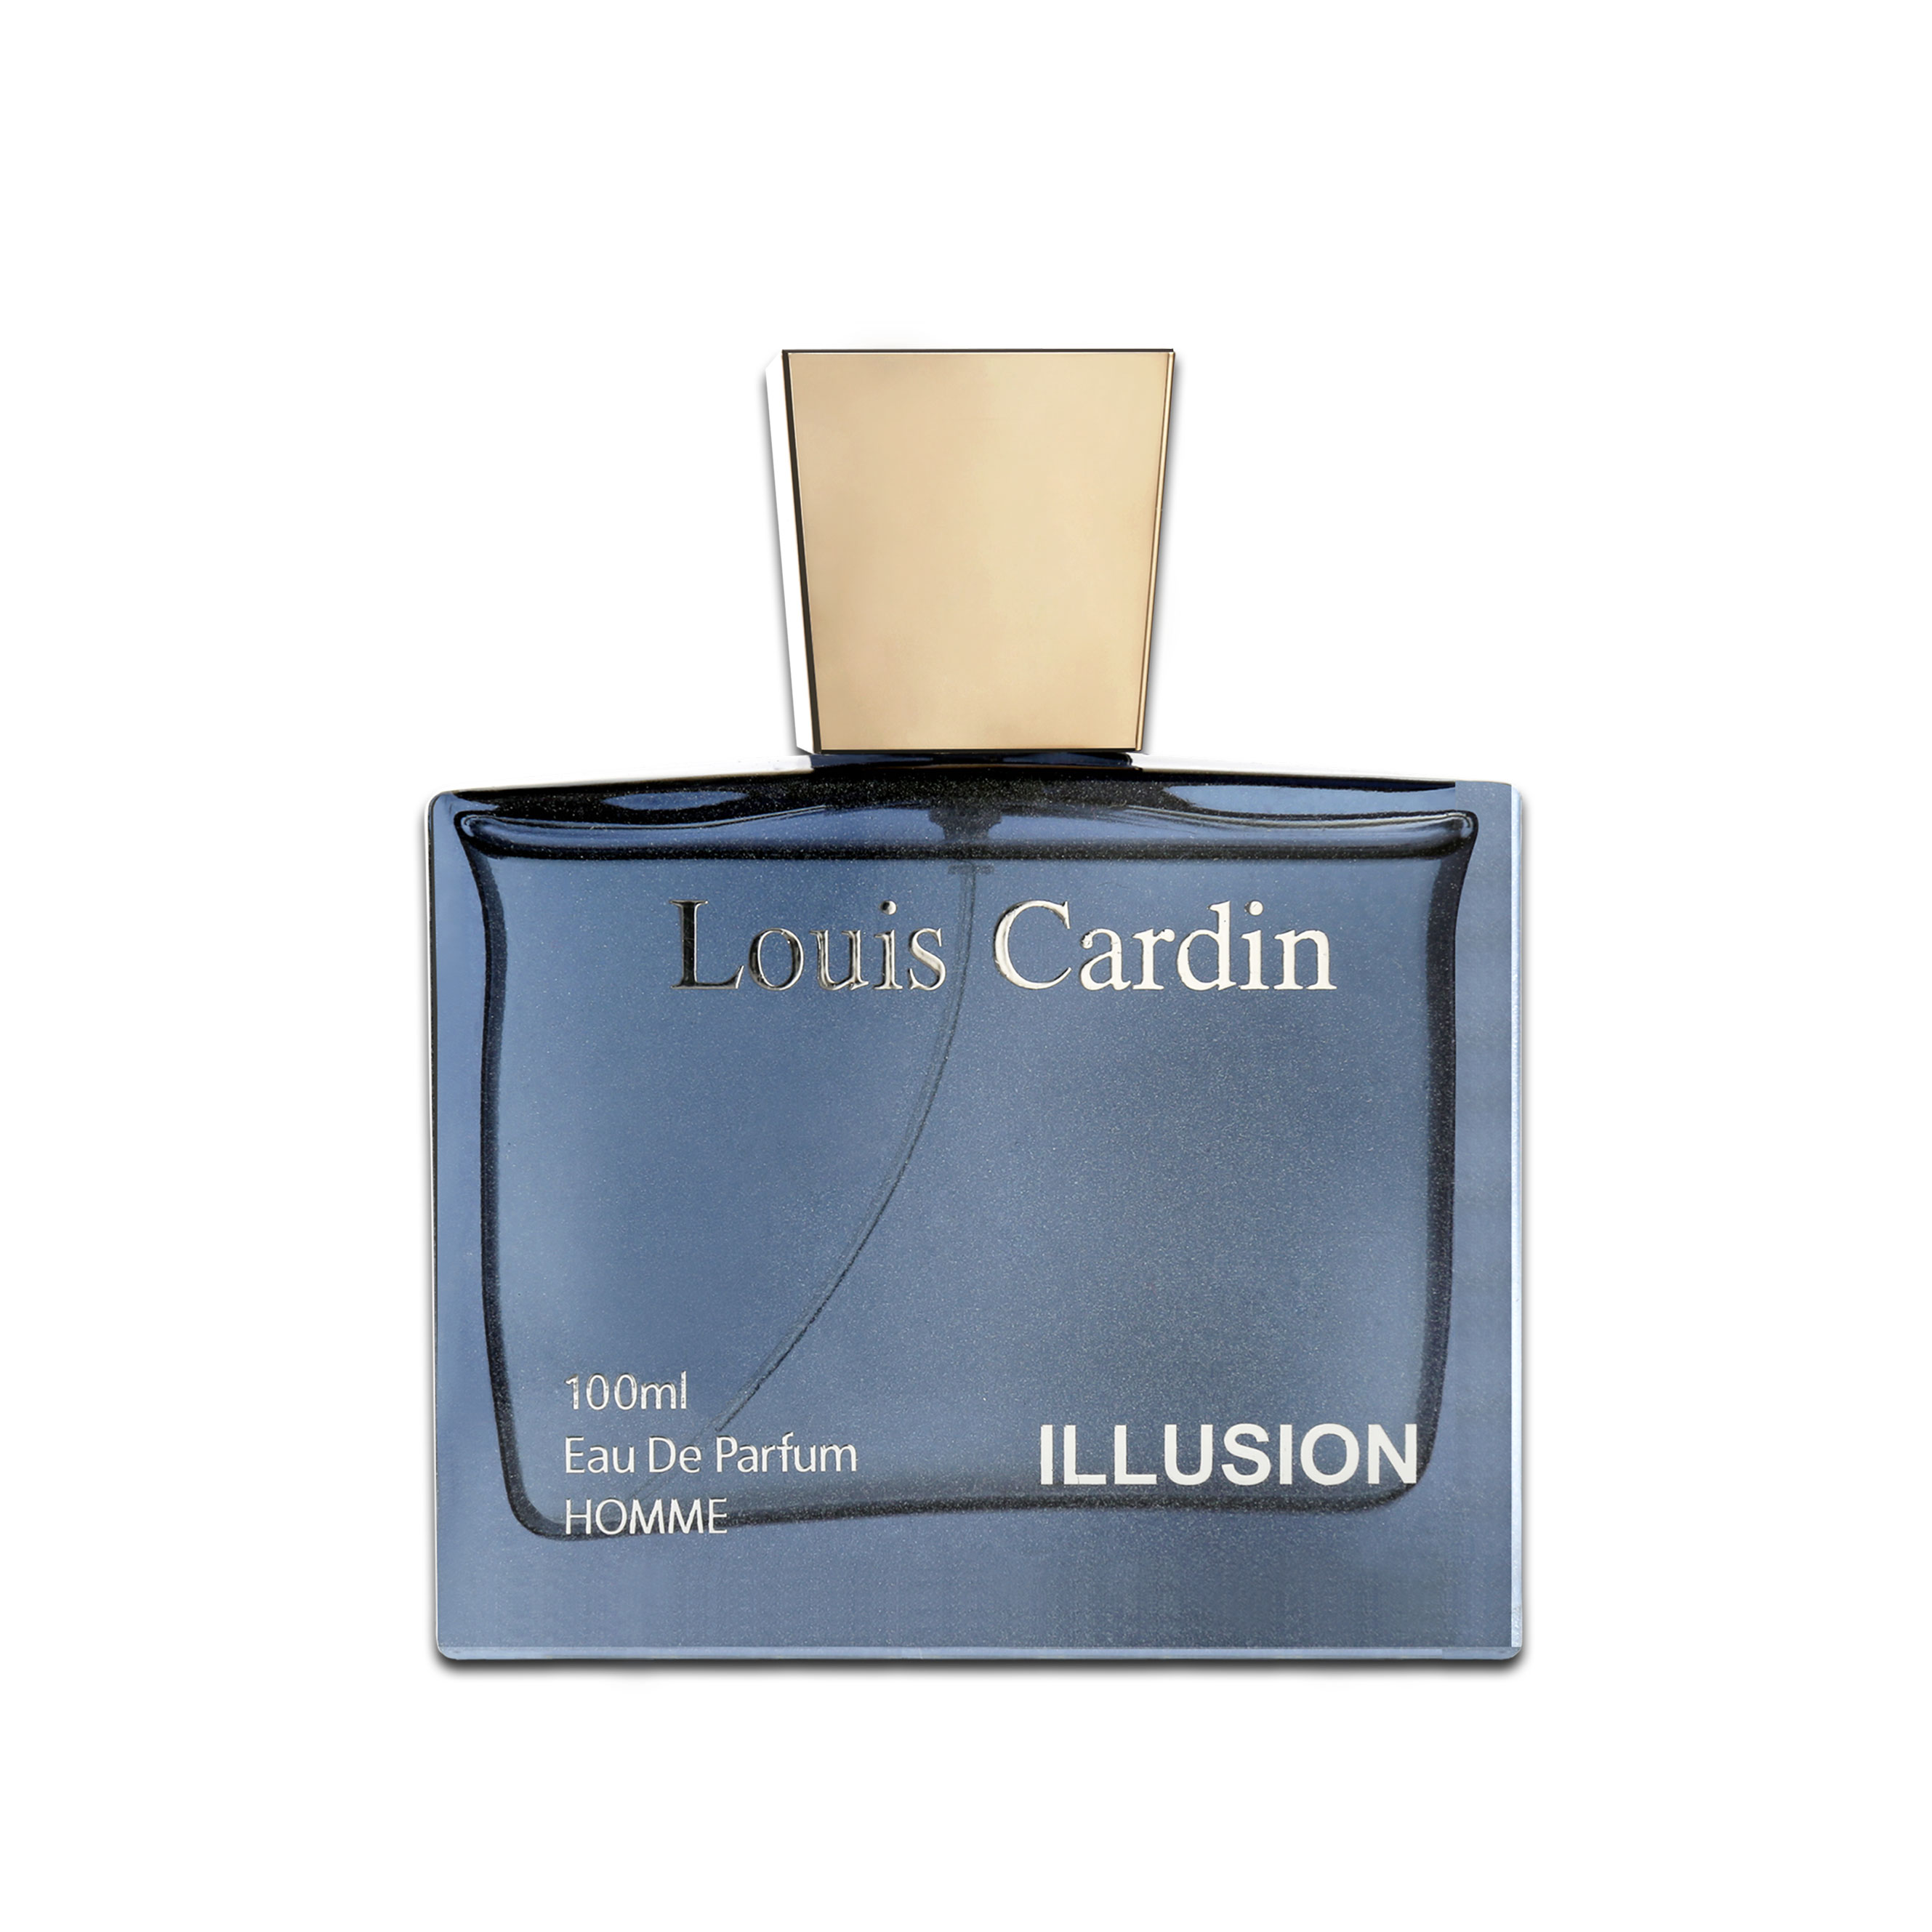 Louis Cardin Dream EDP – Louis Cardin